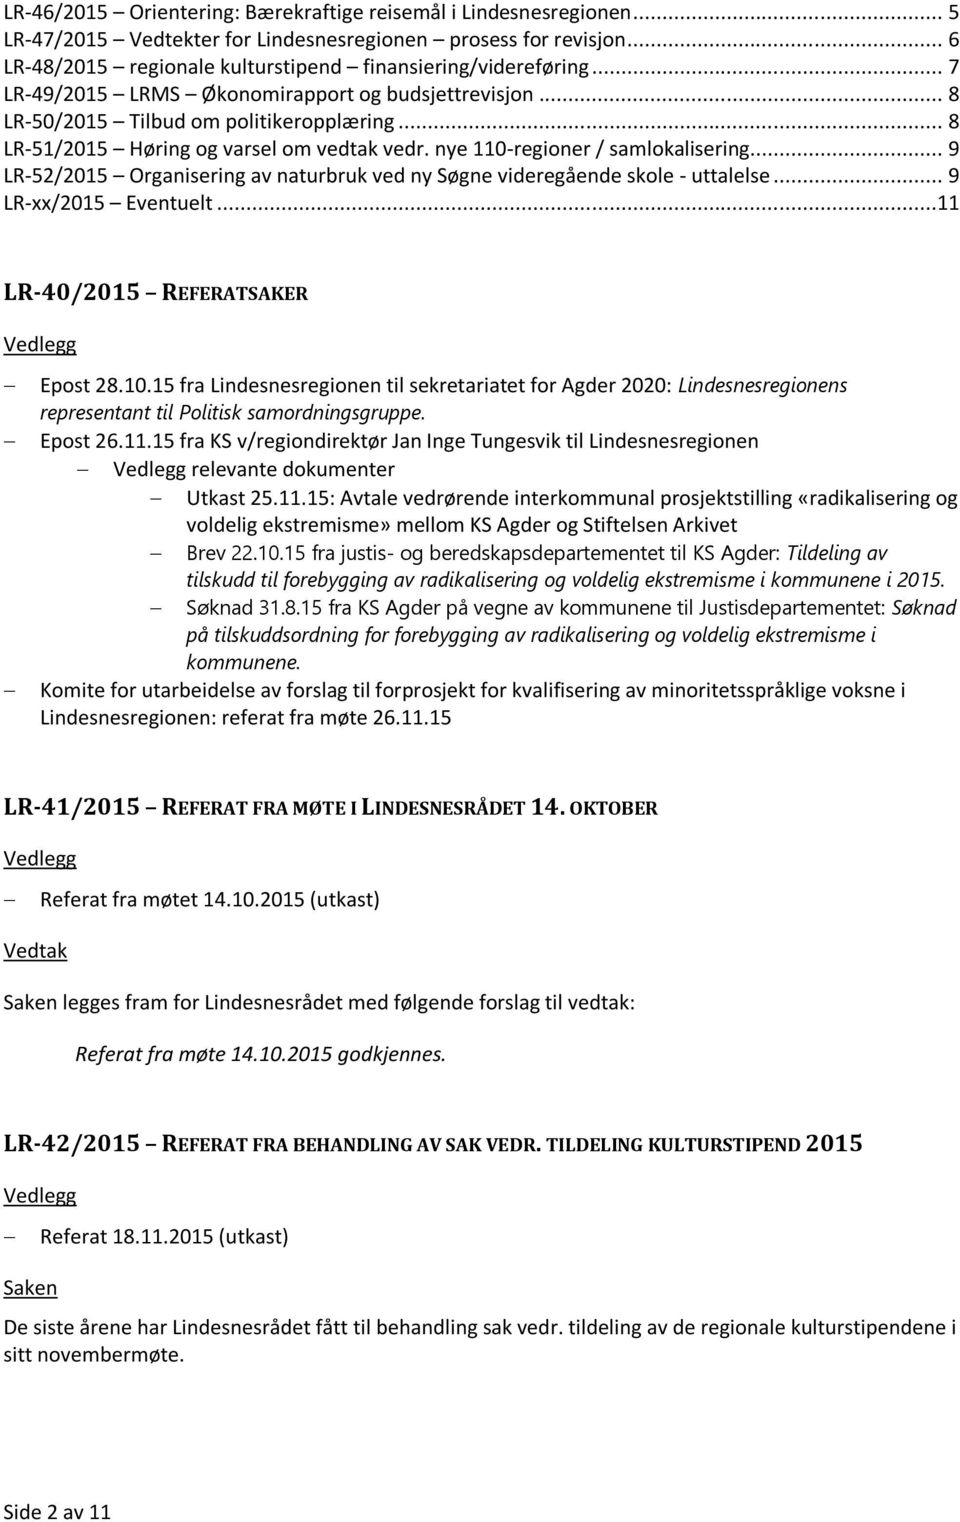 .. 9 LR-52/2015 Organisering av naturbruk ved ny Søgne videregående skole - uttalelse... 9 LR-xx/2015 Eventuelt...11 LR-40/2015 REFERATSAKER Epost 28.10.